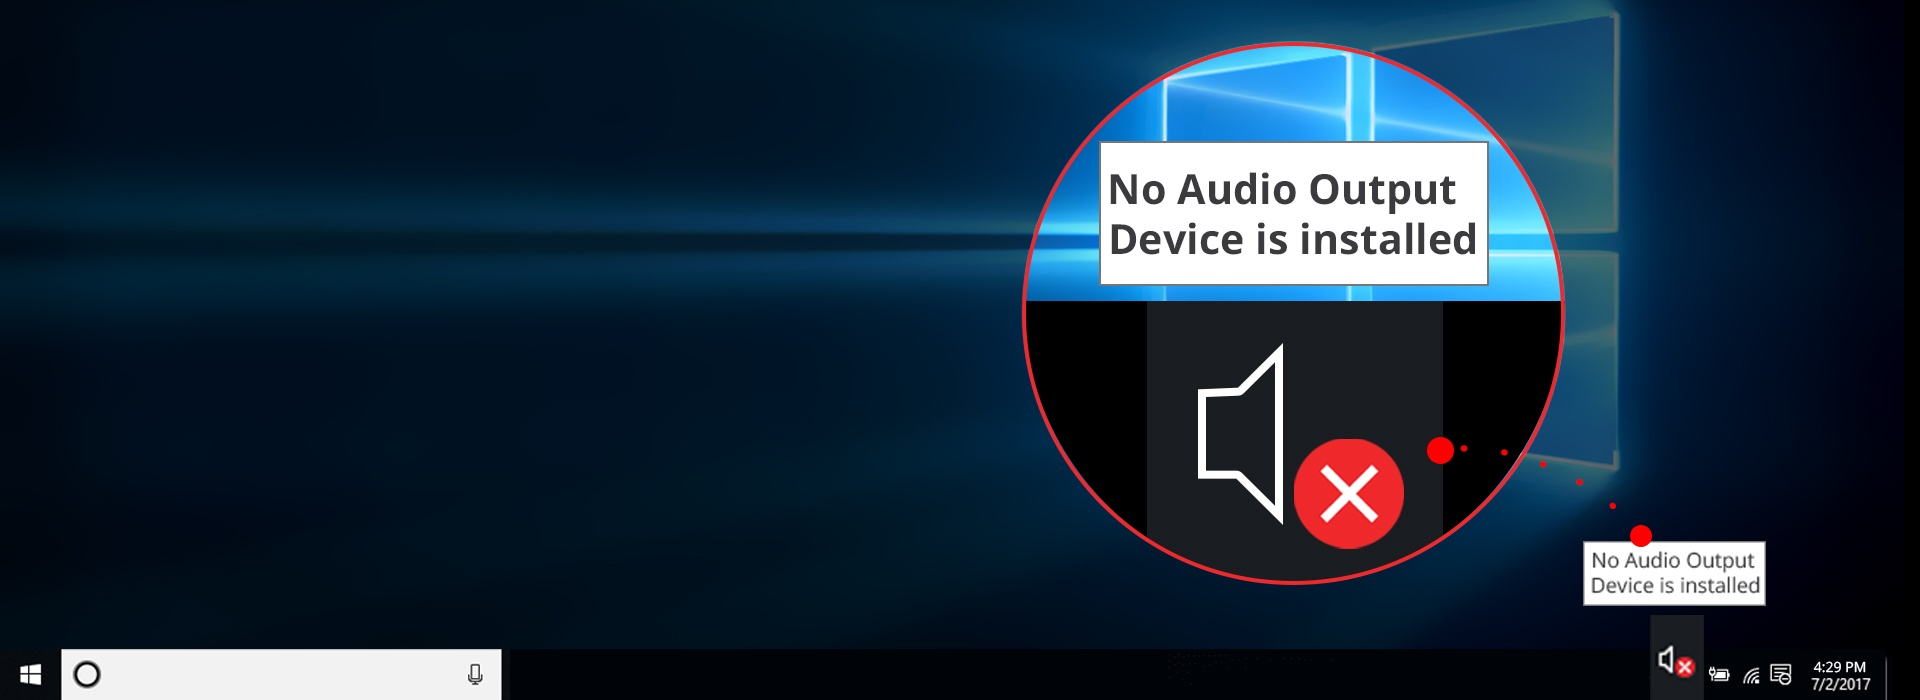 kein Audioausgabegerät ist gerade installiert Windows 7 asus